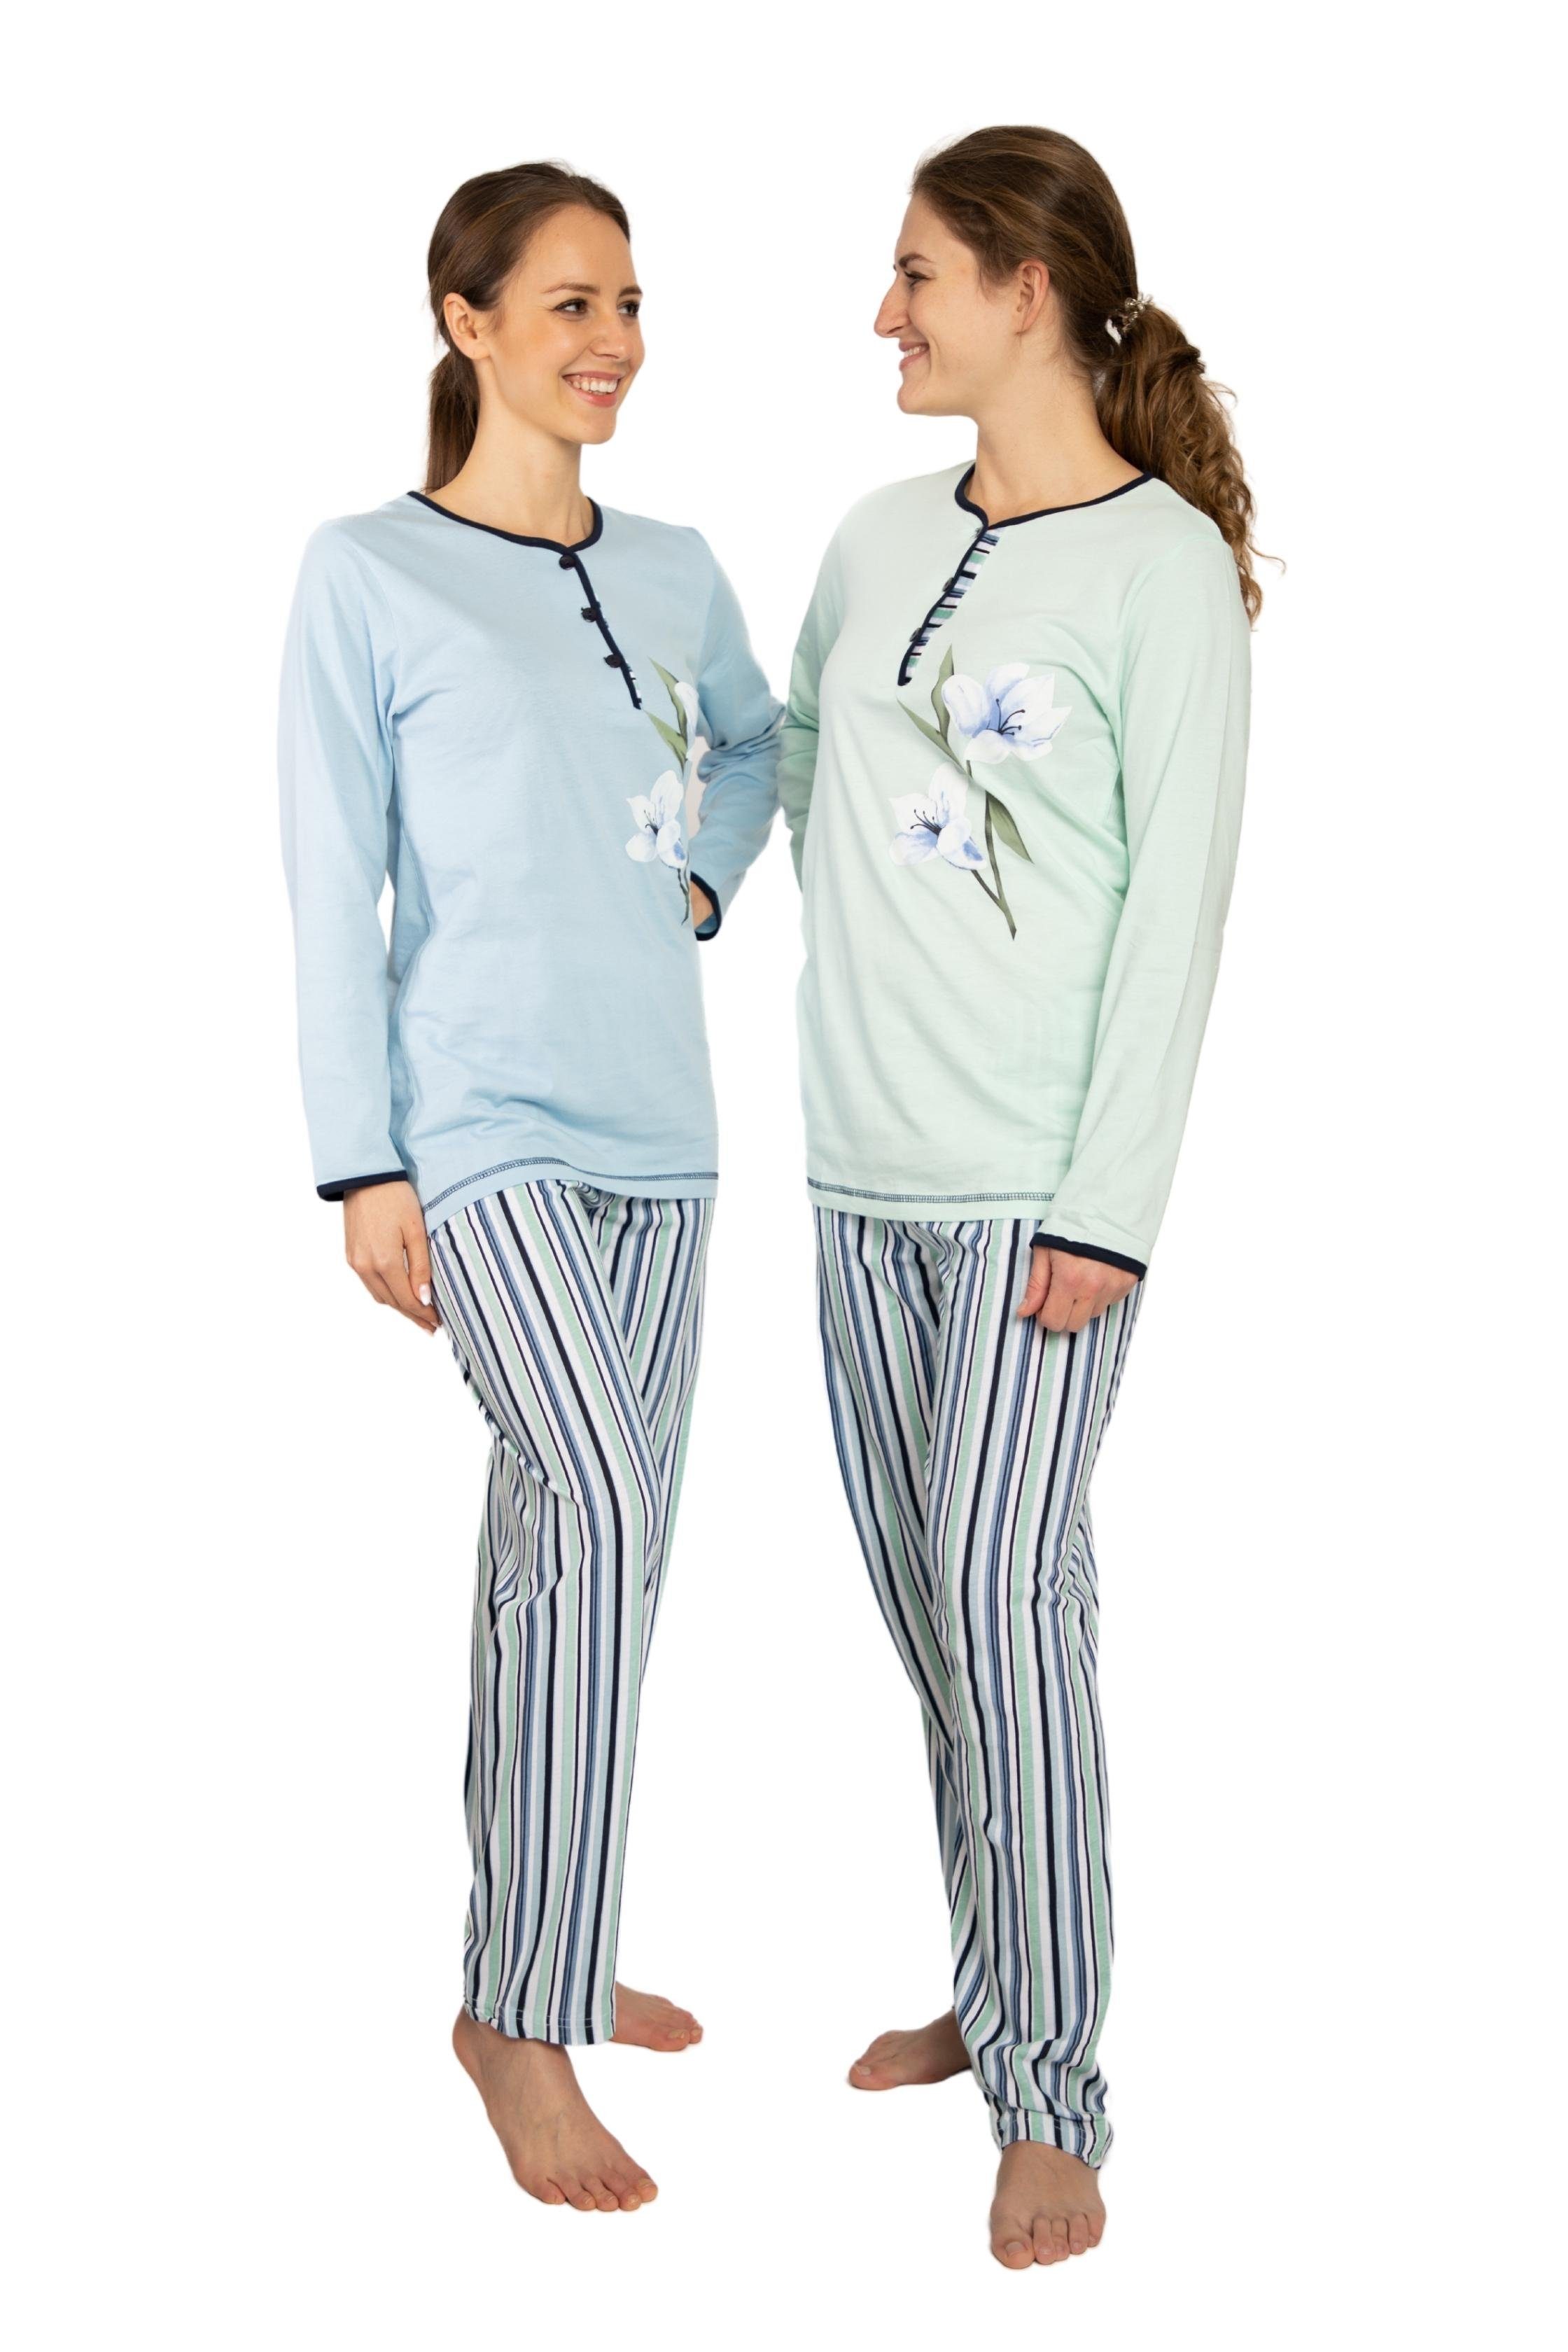 Stück Consult-Tex (3 Stück) Pack Packung, 3er Damen Pyjama DW739 3 Schlafanzug, Pyjama, im Homewear-Set Streifenmuster